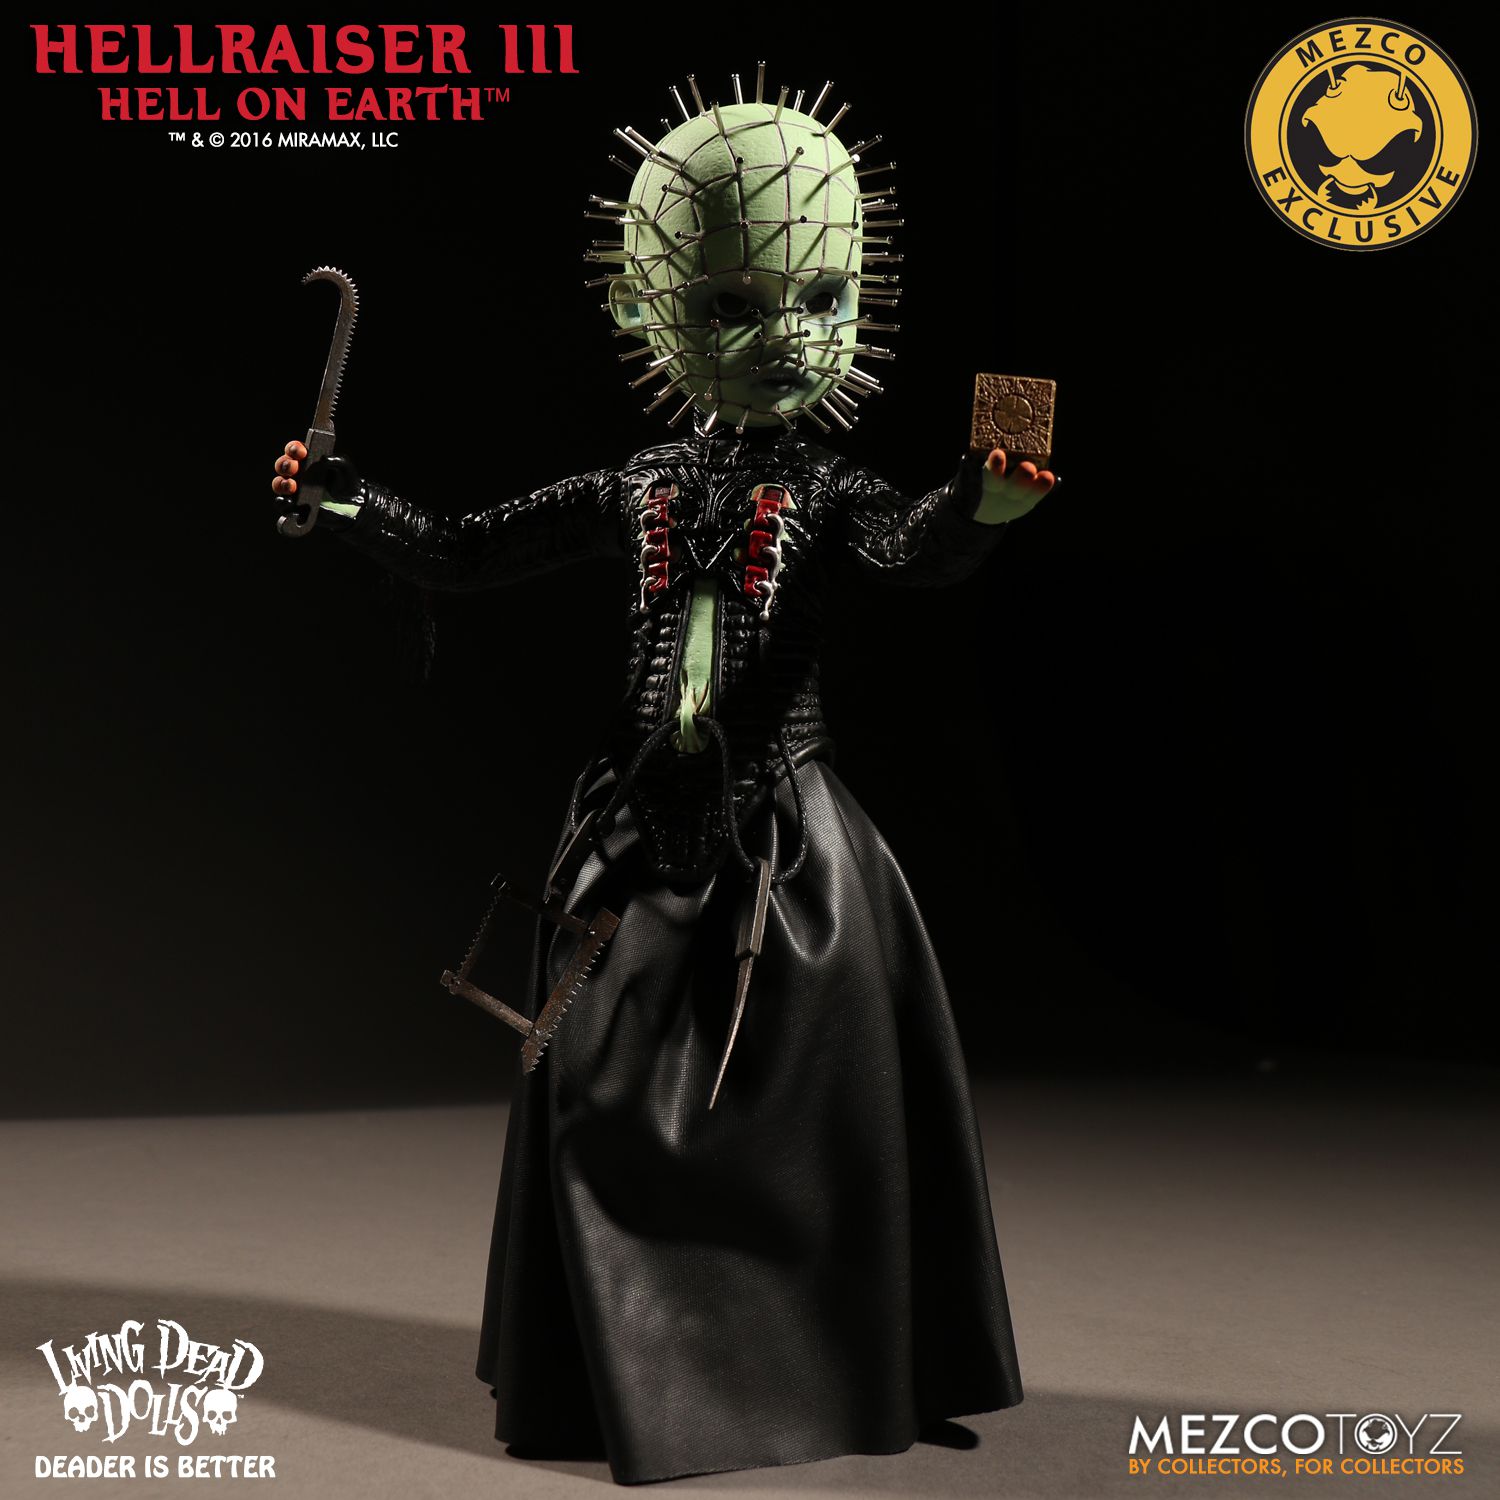 Mezco LIVING DEAD DOLLS PINHEAD 10" inch figure Hellraiser 3 Cenobite New NM/M 